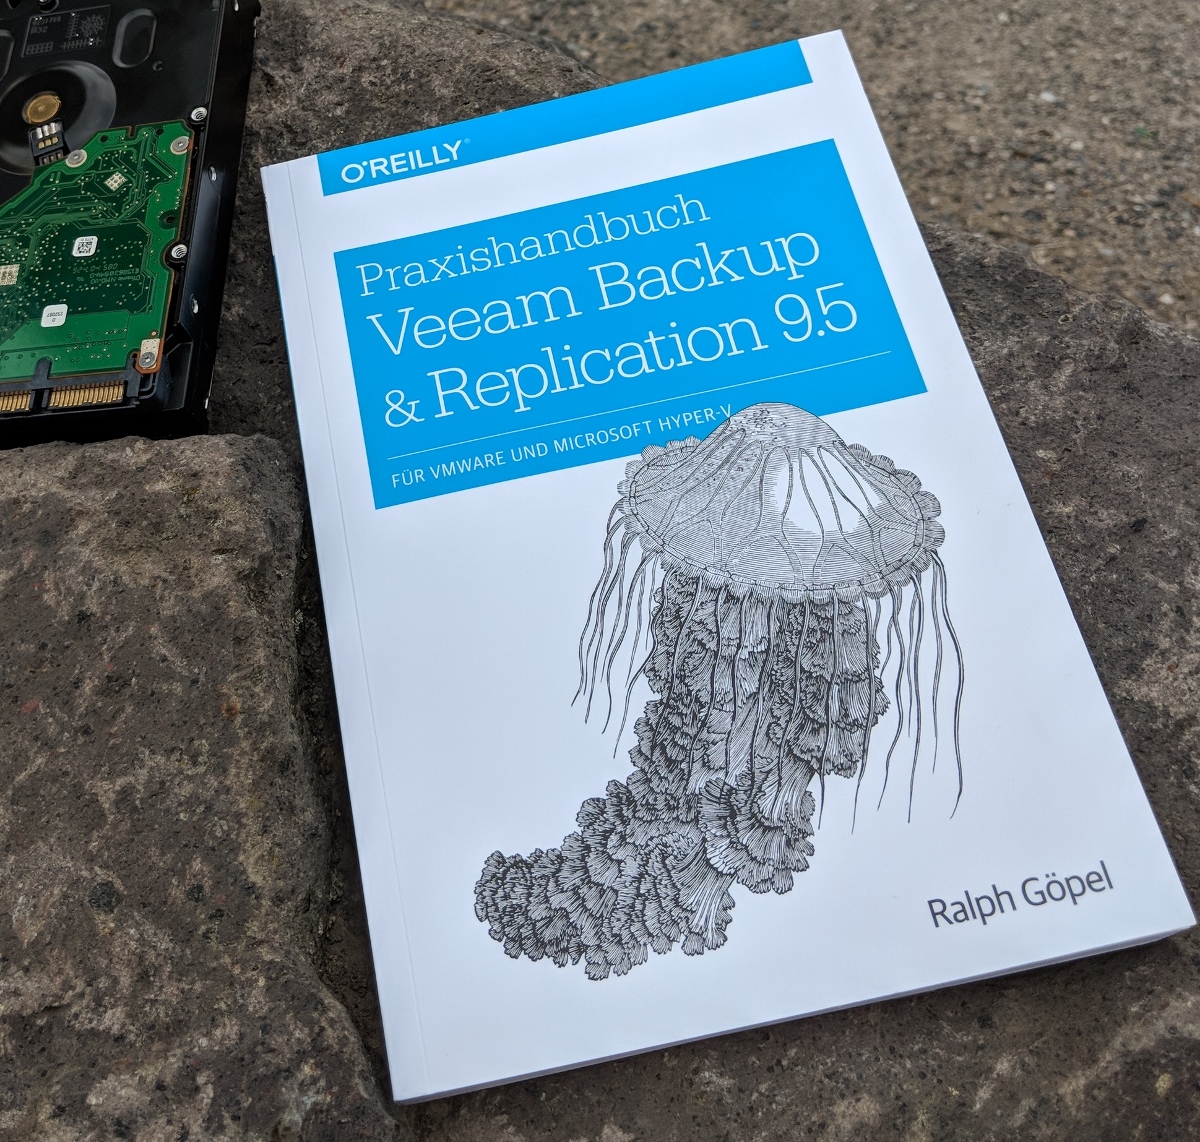 Neuerscheinung: Praxishandbuch Veeam Backup & Replication 9.5